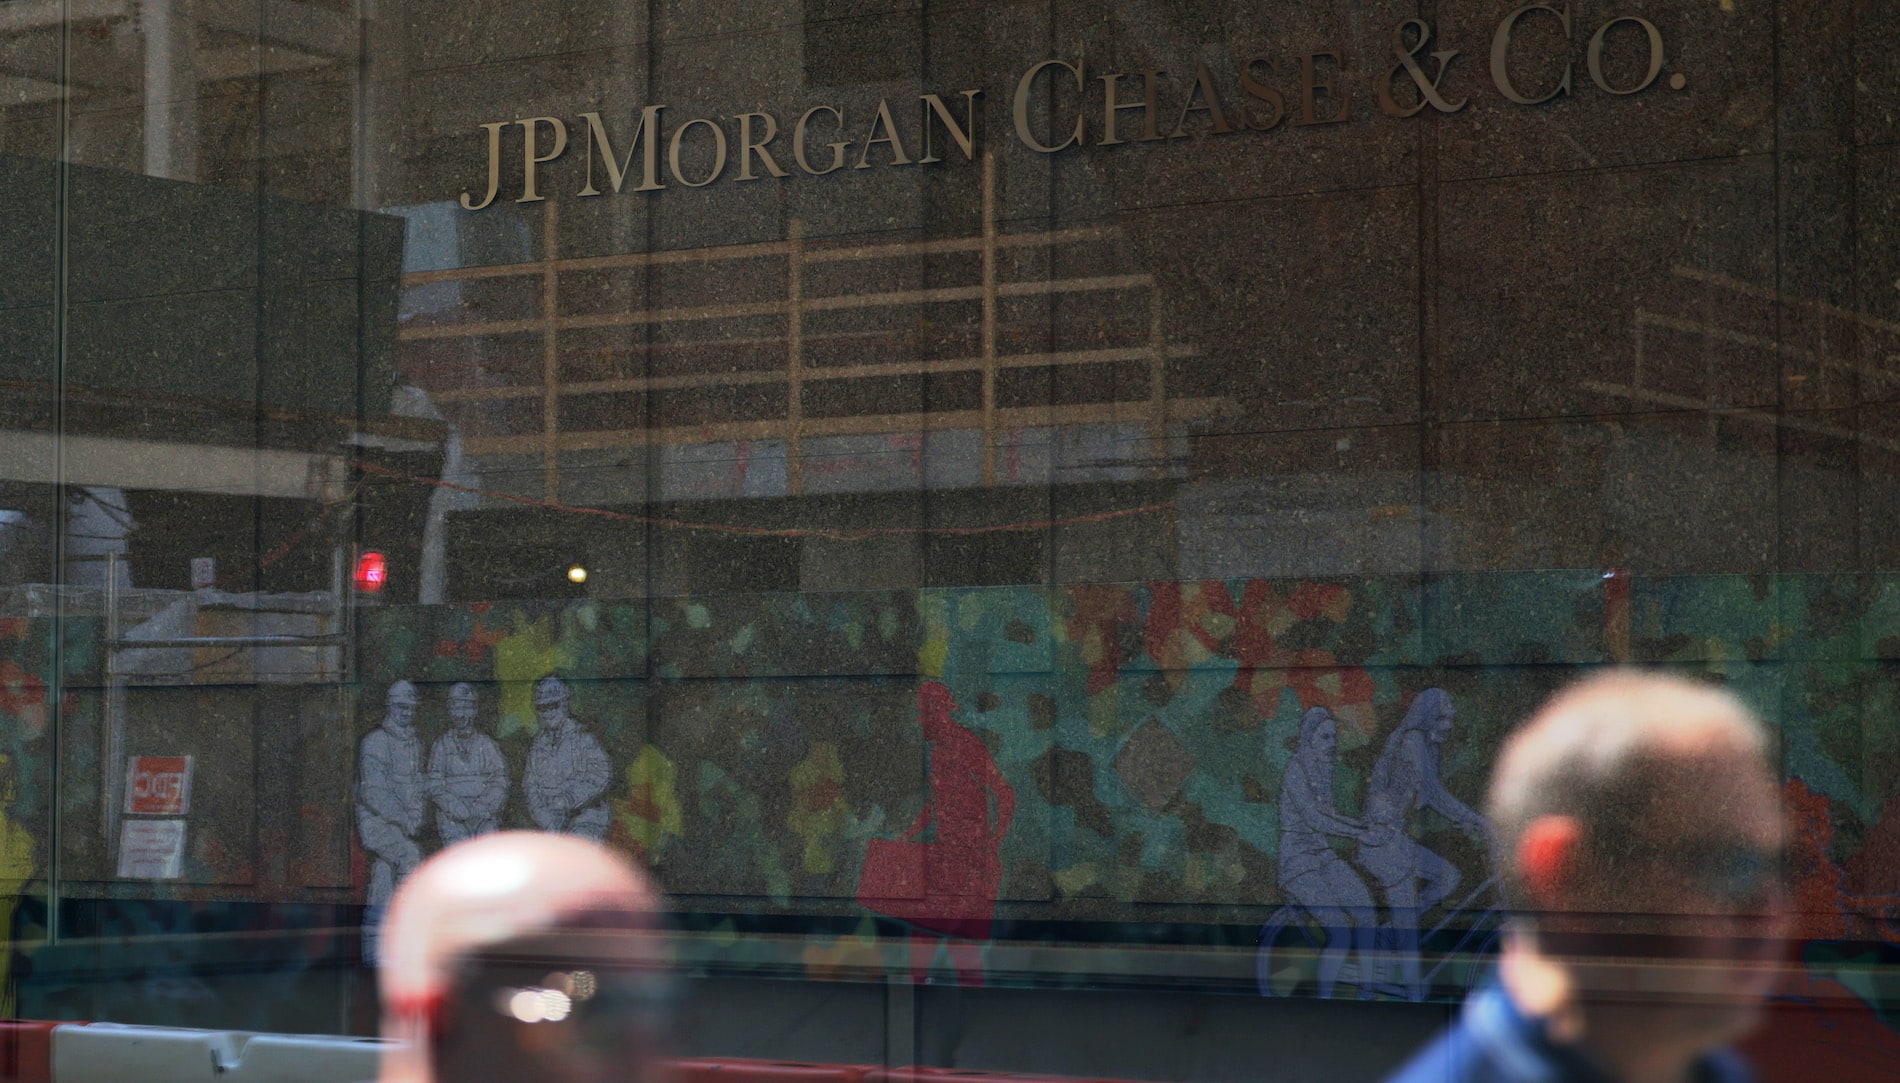 Banco JPMorgan Chase de EE.UU. pagará $290 millones a víctimas de abusos sexuales de Jeffrey Epstein